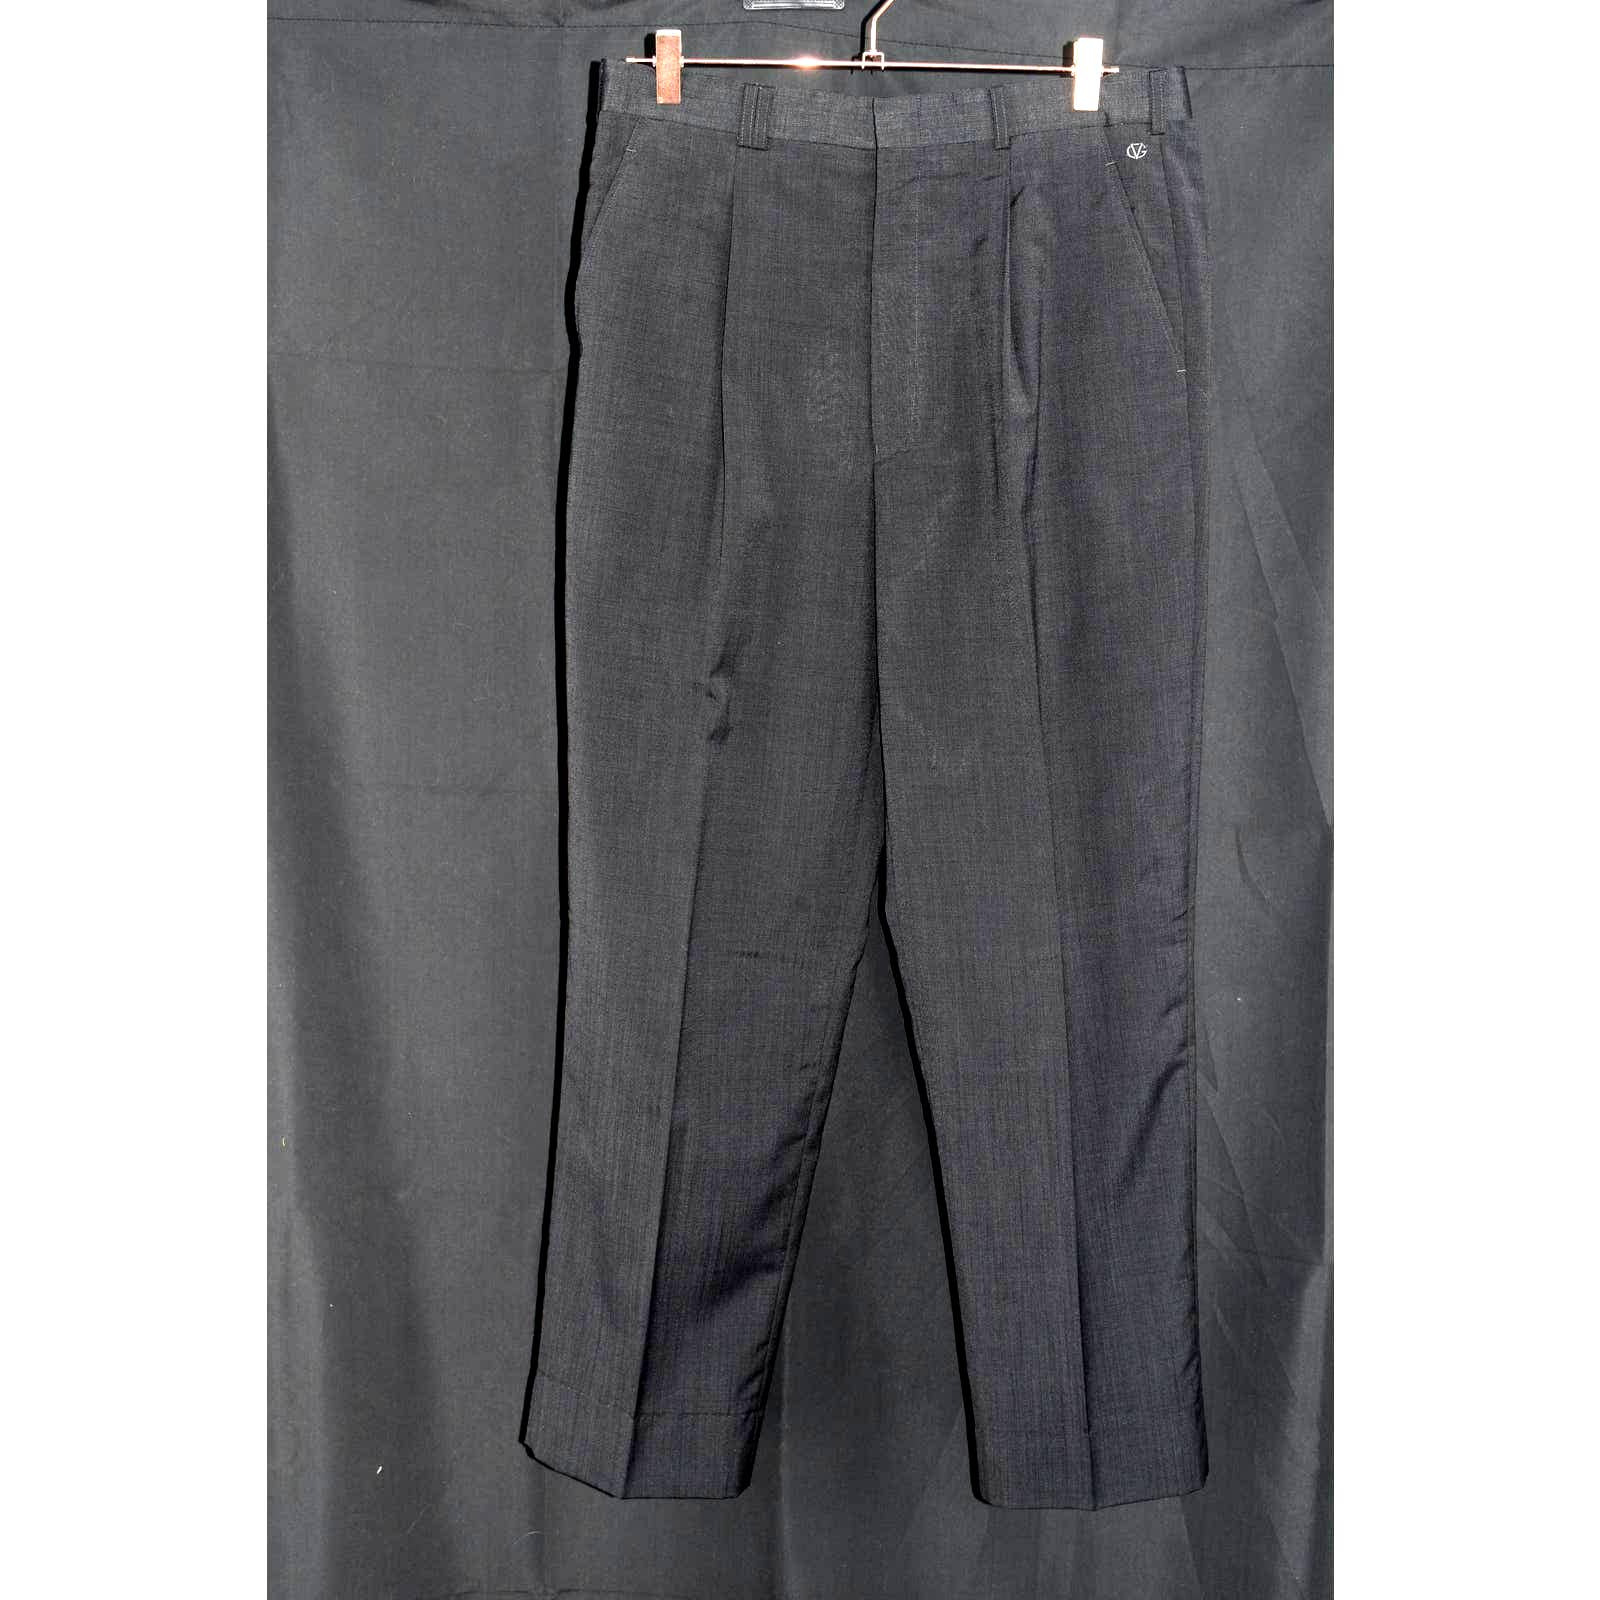 Giovanni Valentino Gray Pleated Wool Slacks Pants - 50 / 34